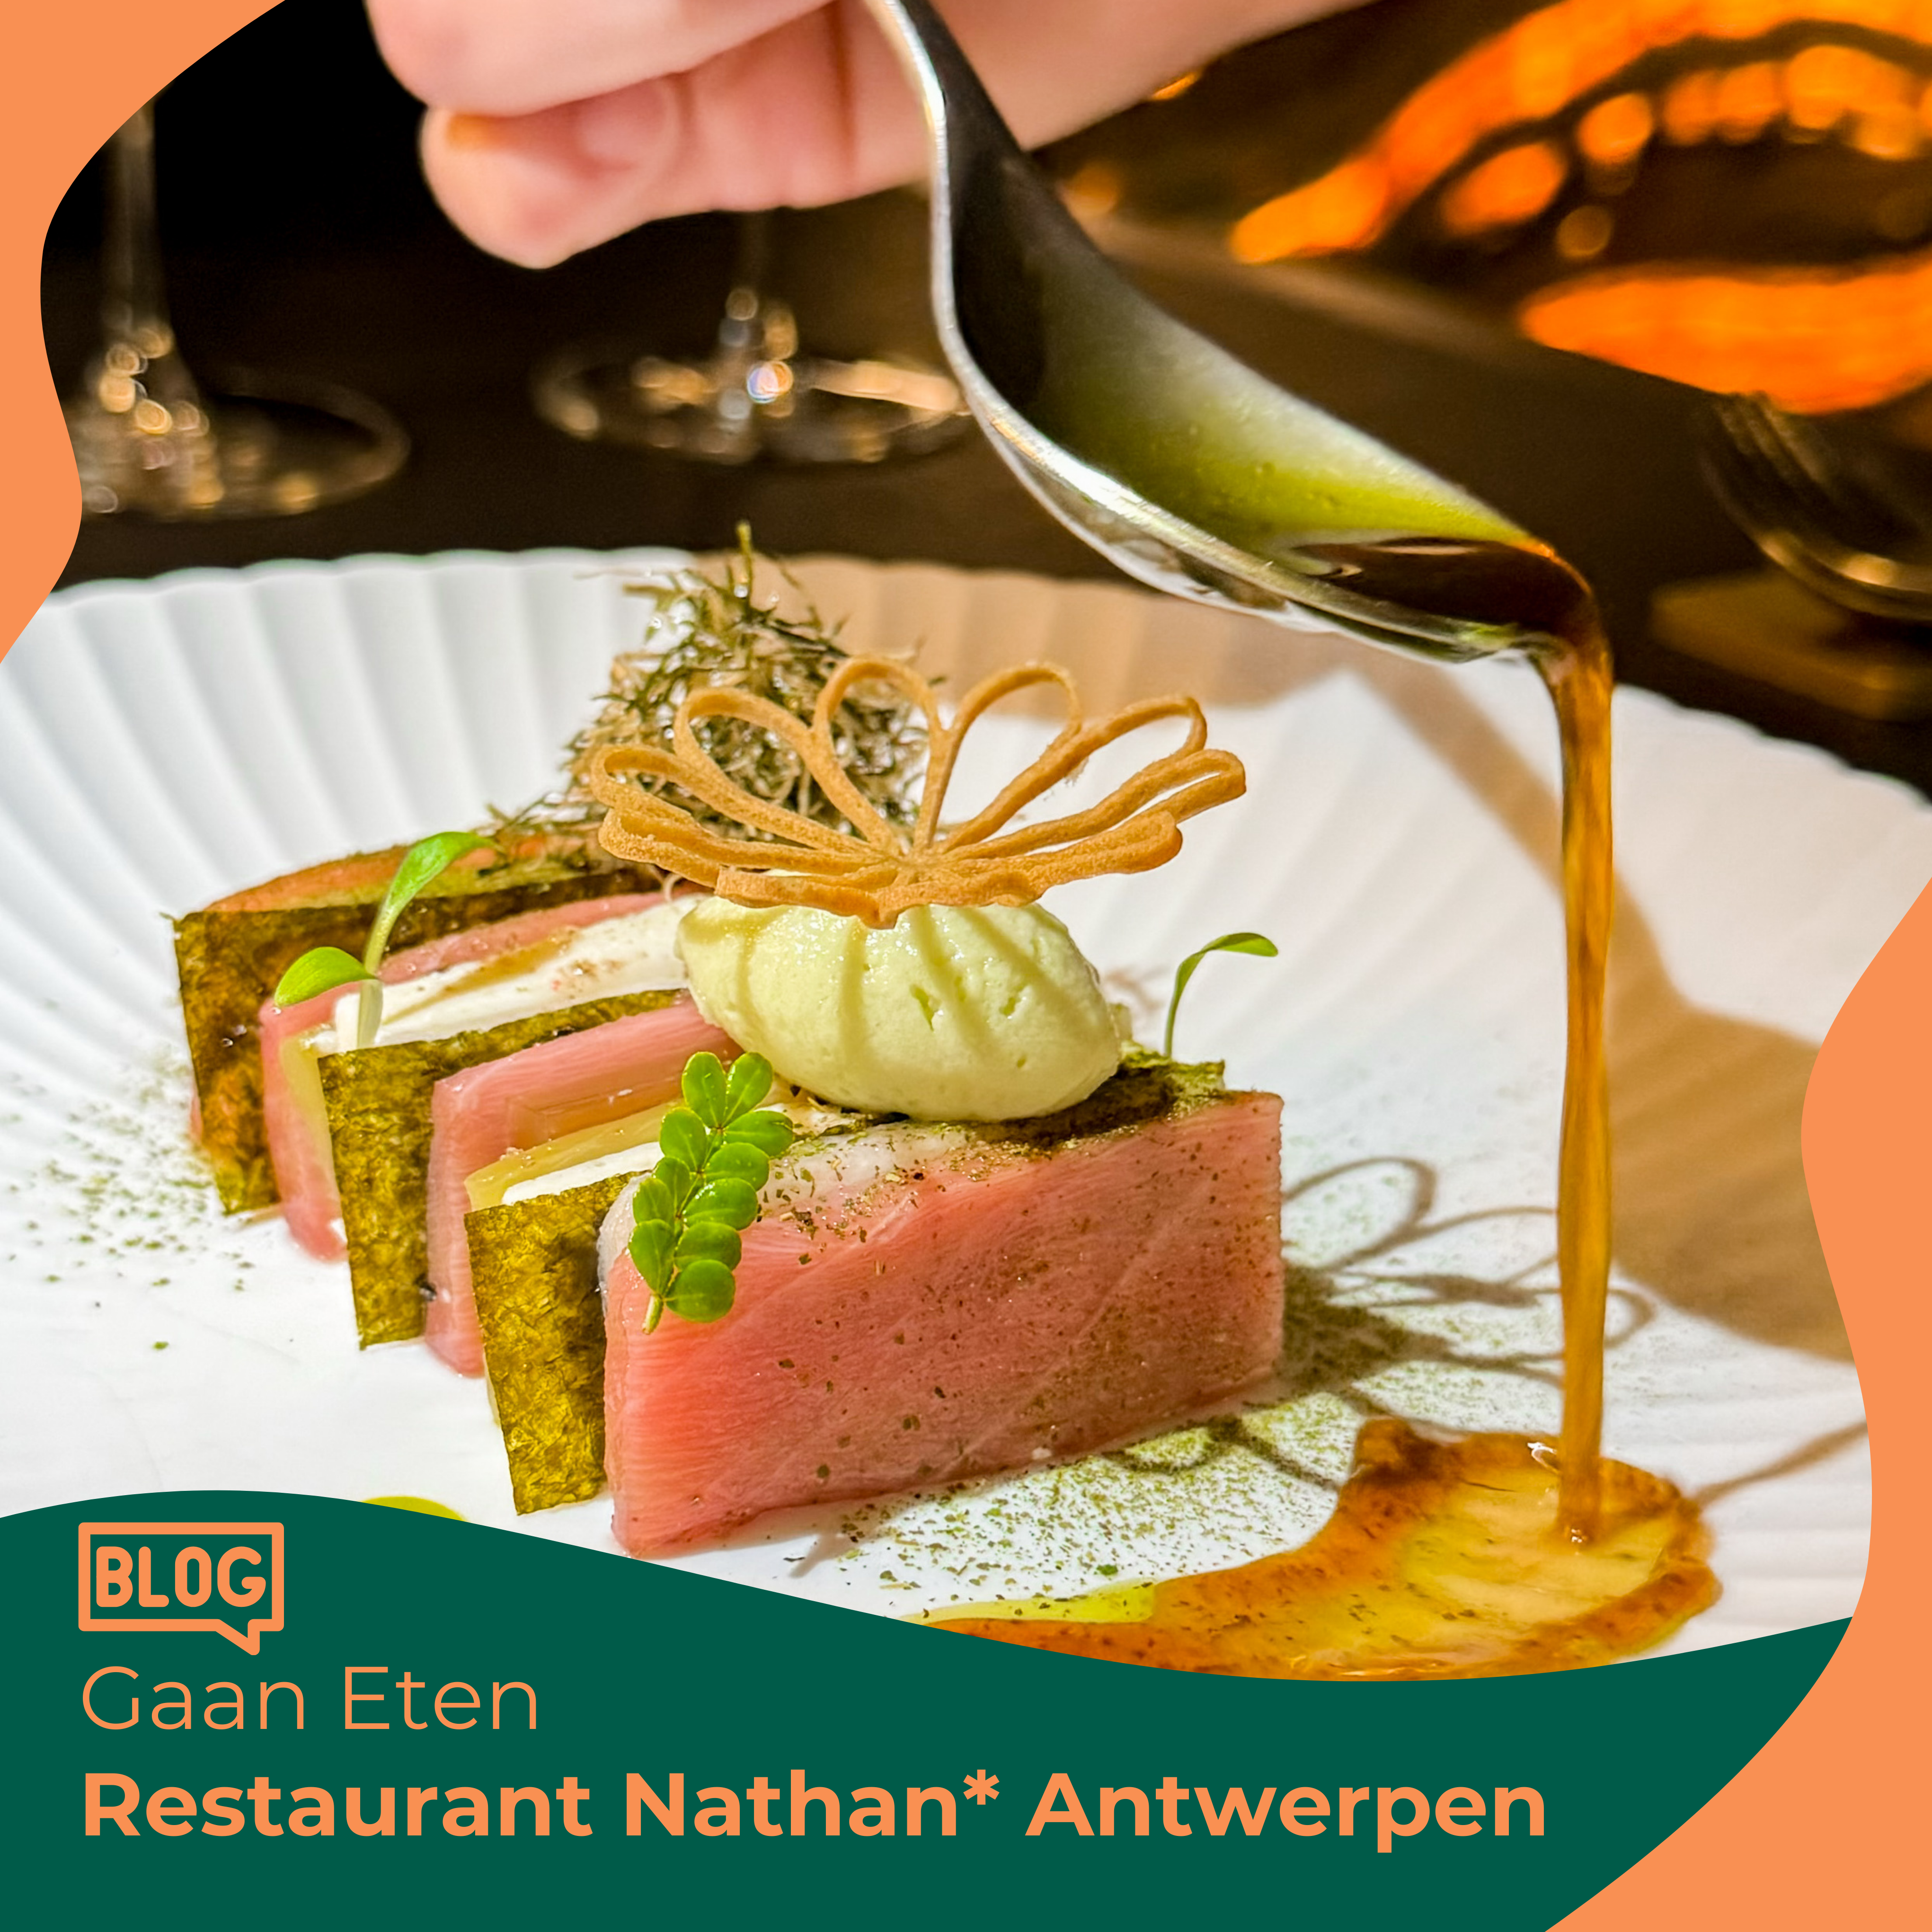 Gaan eten bij Nathan*, Antwerpen